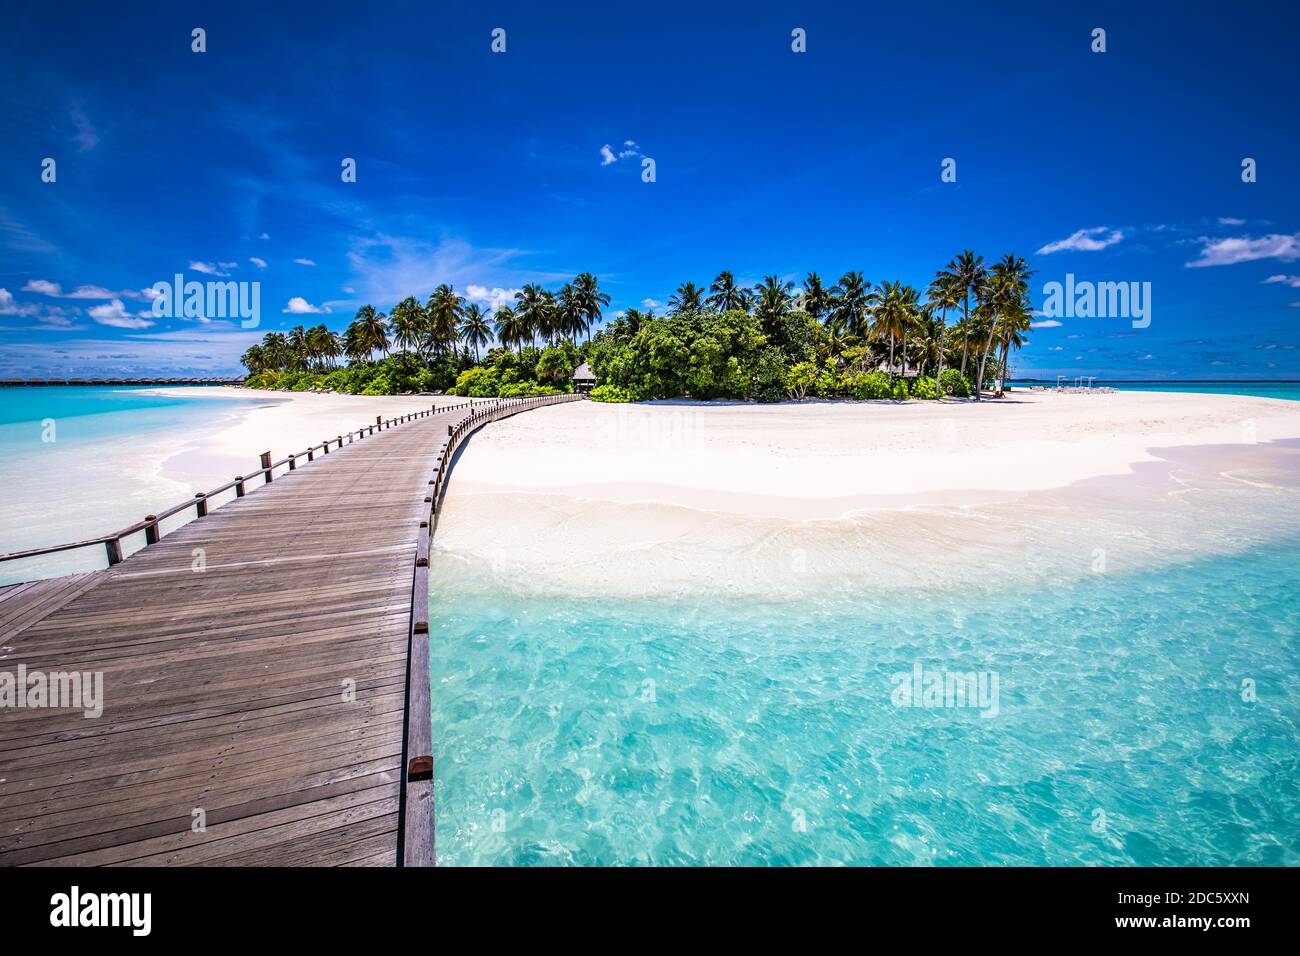 Malediven Strandresort Panoramalandschaft. Tropischer Urlaub am Strand. Langer hölzerner Pier, Steg in die paradiesische Insel, Palmen, weißer Sand, blauer Himmel Stockfoto